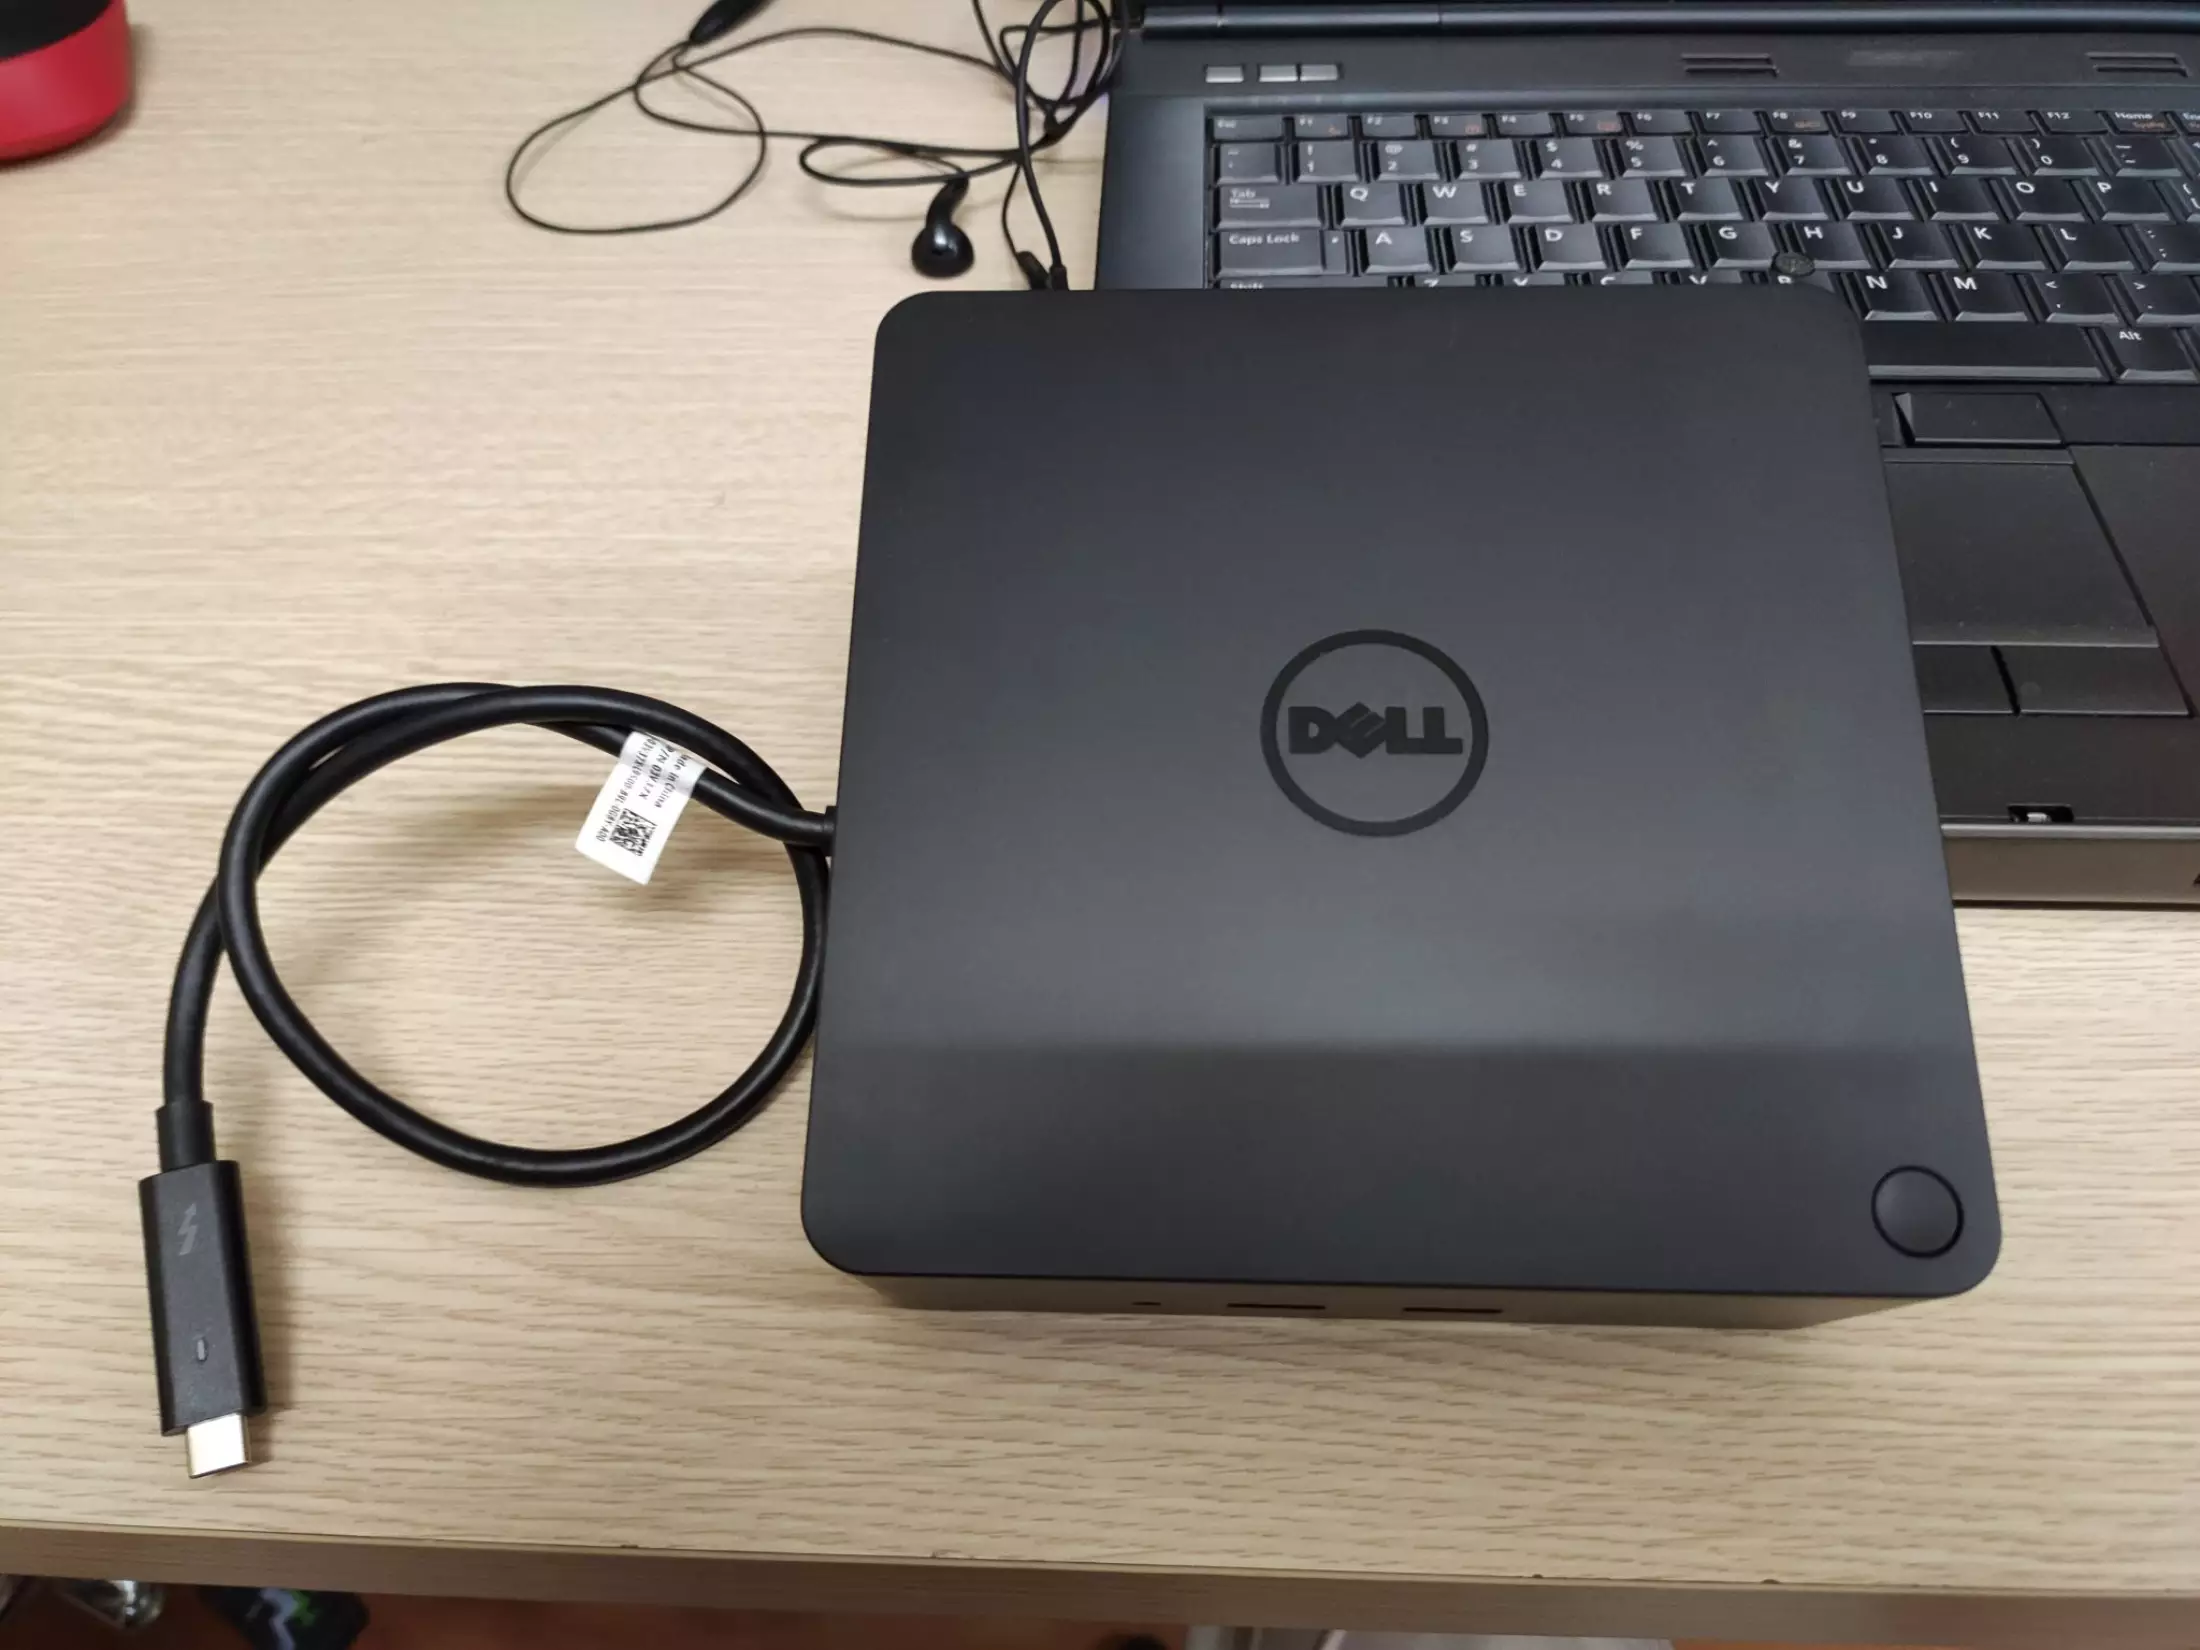 Dock Dell TB16 kèm Adapter 130W đến 240W - Mở rộng cổng kết nối qua Thunderbolt 3 cho Laptop Dell,...